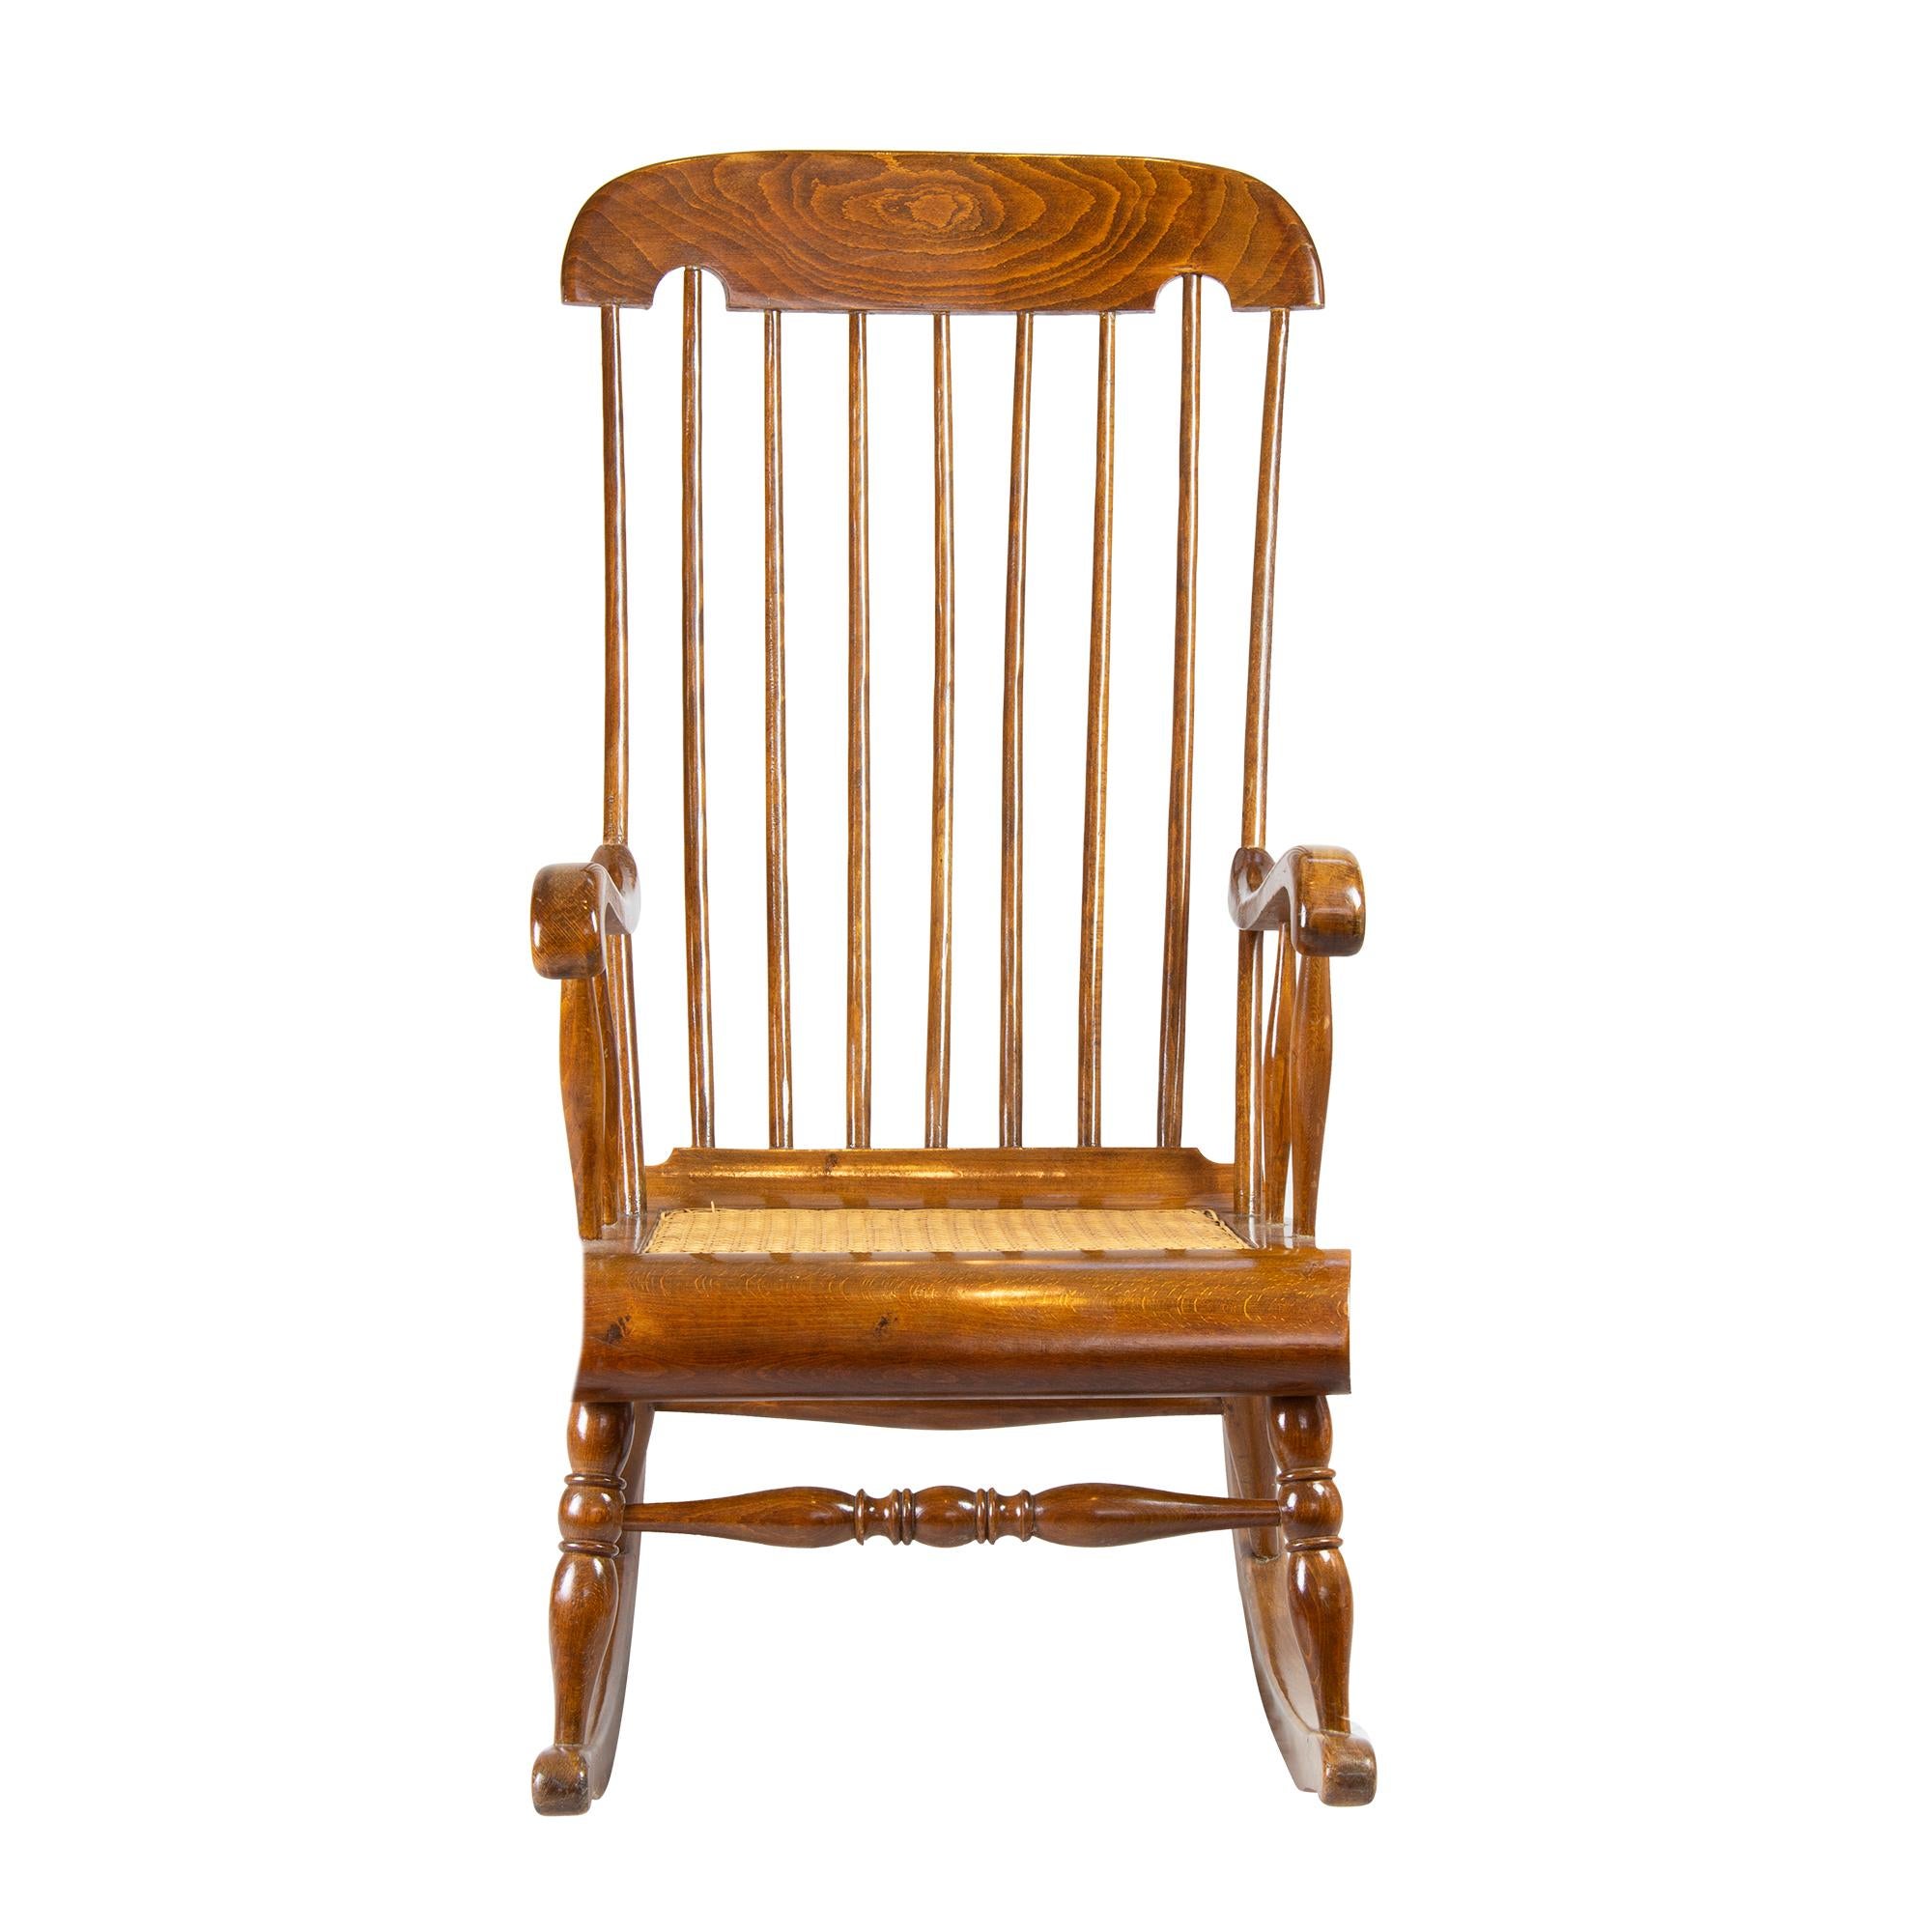 Der Armlehnen-Schaukelstuhl wurde aus massivem Buchenholz gefertigt. Die Sitzfläche ist mit Schilfrohr geflochten. Die Rücken- und Kopfstütze ist sehr weit nach oben gezogen. Der Stuhl stammt aus der Zeit um 1900.